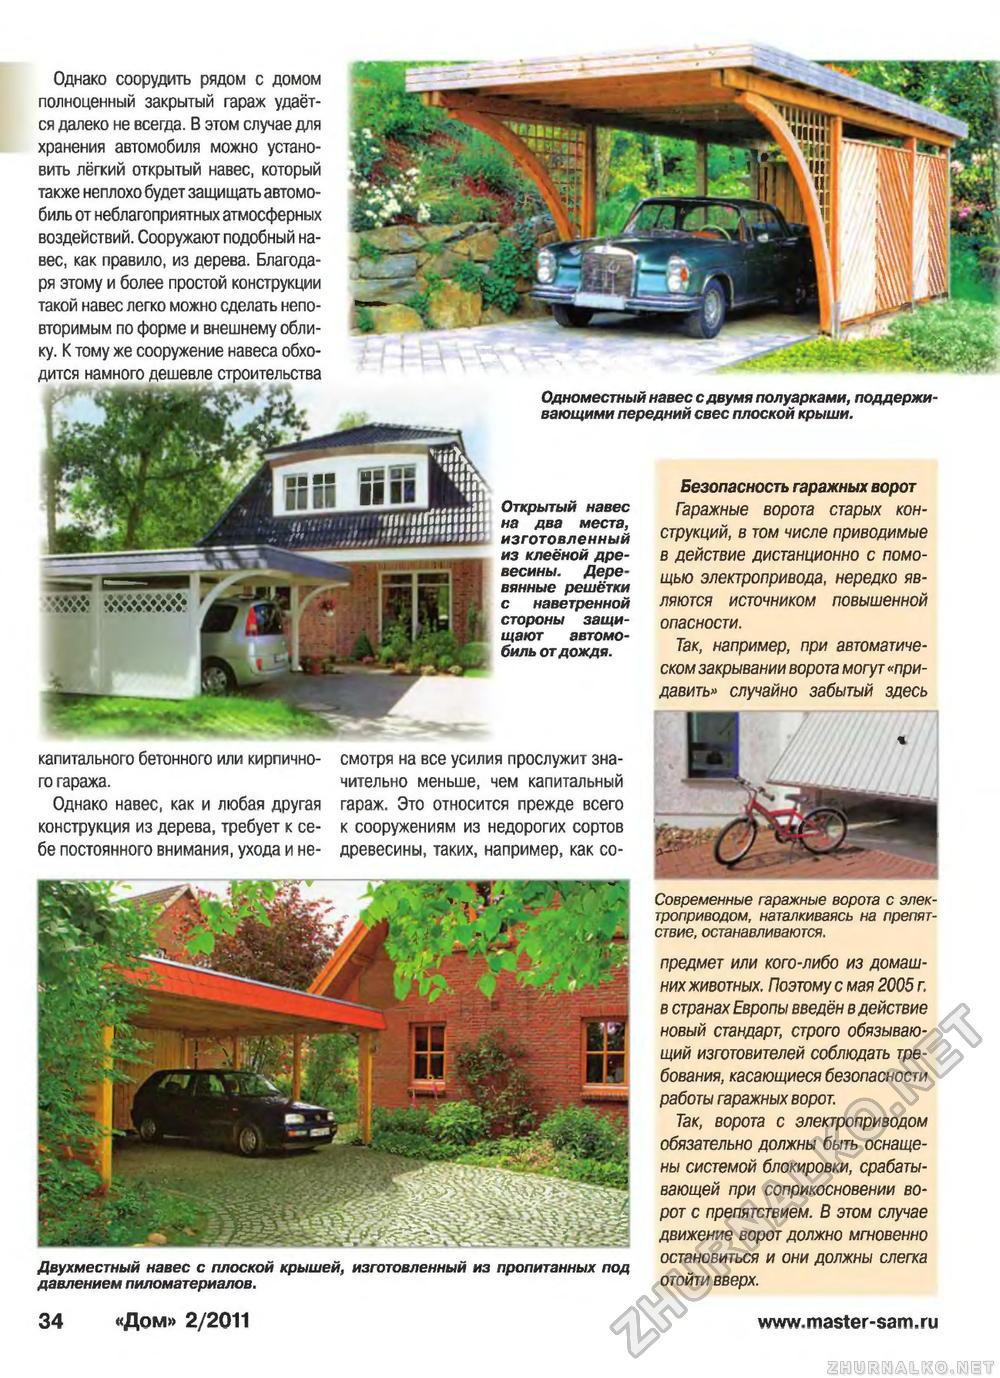 Дом 2011-02, страница 34